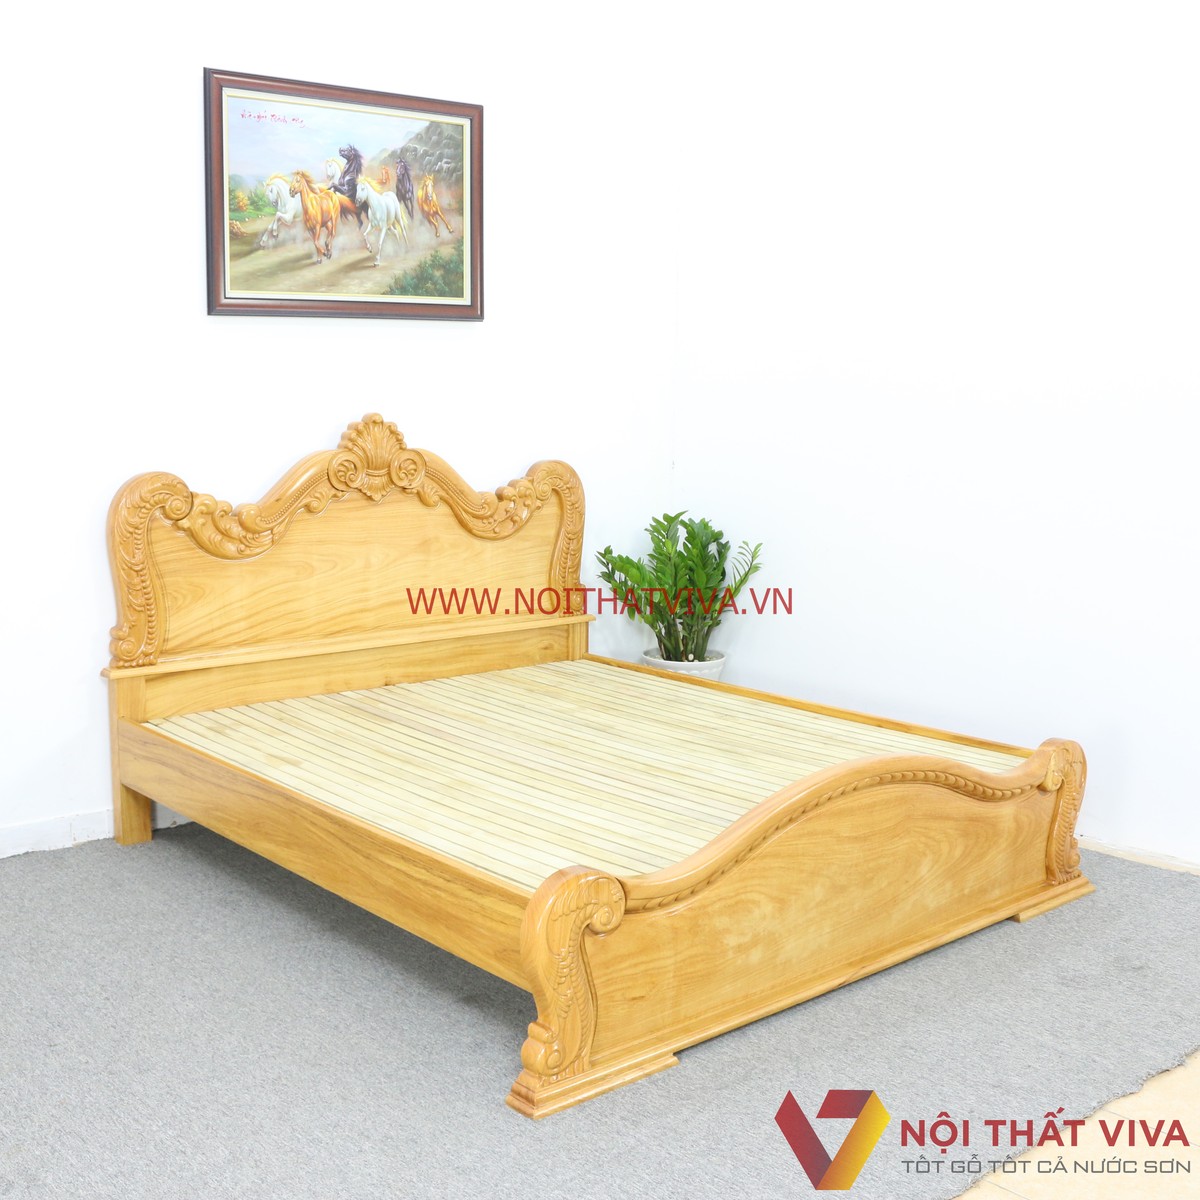 Giường ngủ gỗ gõ đỏ tân cổ điển tại TP.HCM là một sản phẩm nội thất đẹp và sang trọng với thiết kế cổ điển nhưng vẫn tối ưu hóa tính năng. Sự kết hợp giữa chất liệu gỗ cao cấp và thiết kế tinh tế tạo nên không gian ngủ ấm cúng và sang trọng. Hãy quay lại hình ảnh để đắm mình trong không gian đẹp đẽ của giường ngủ này.